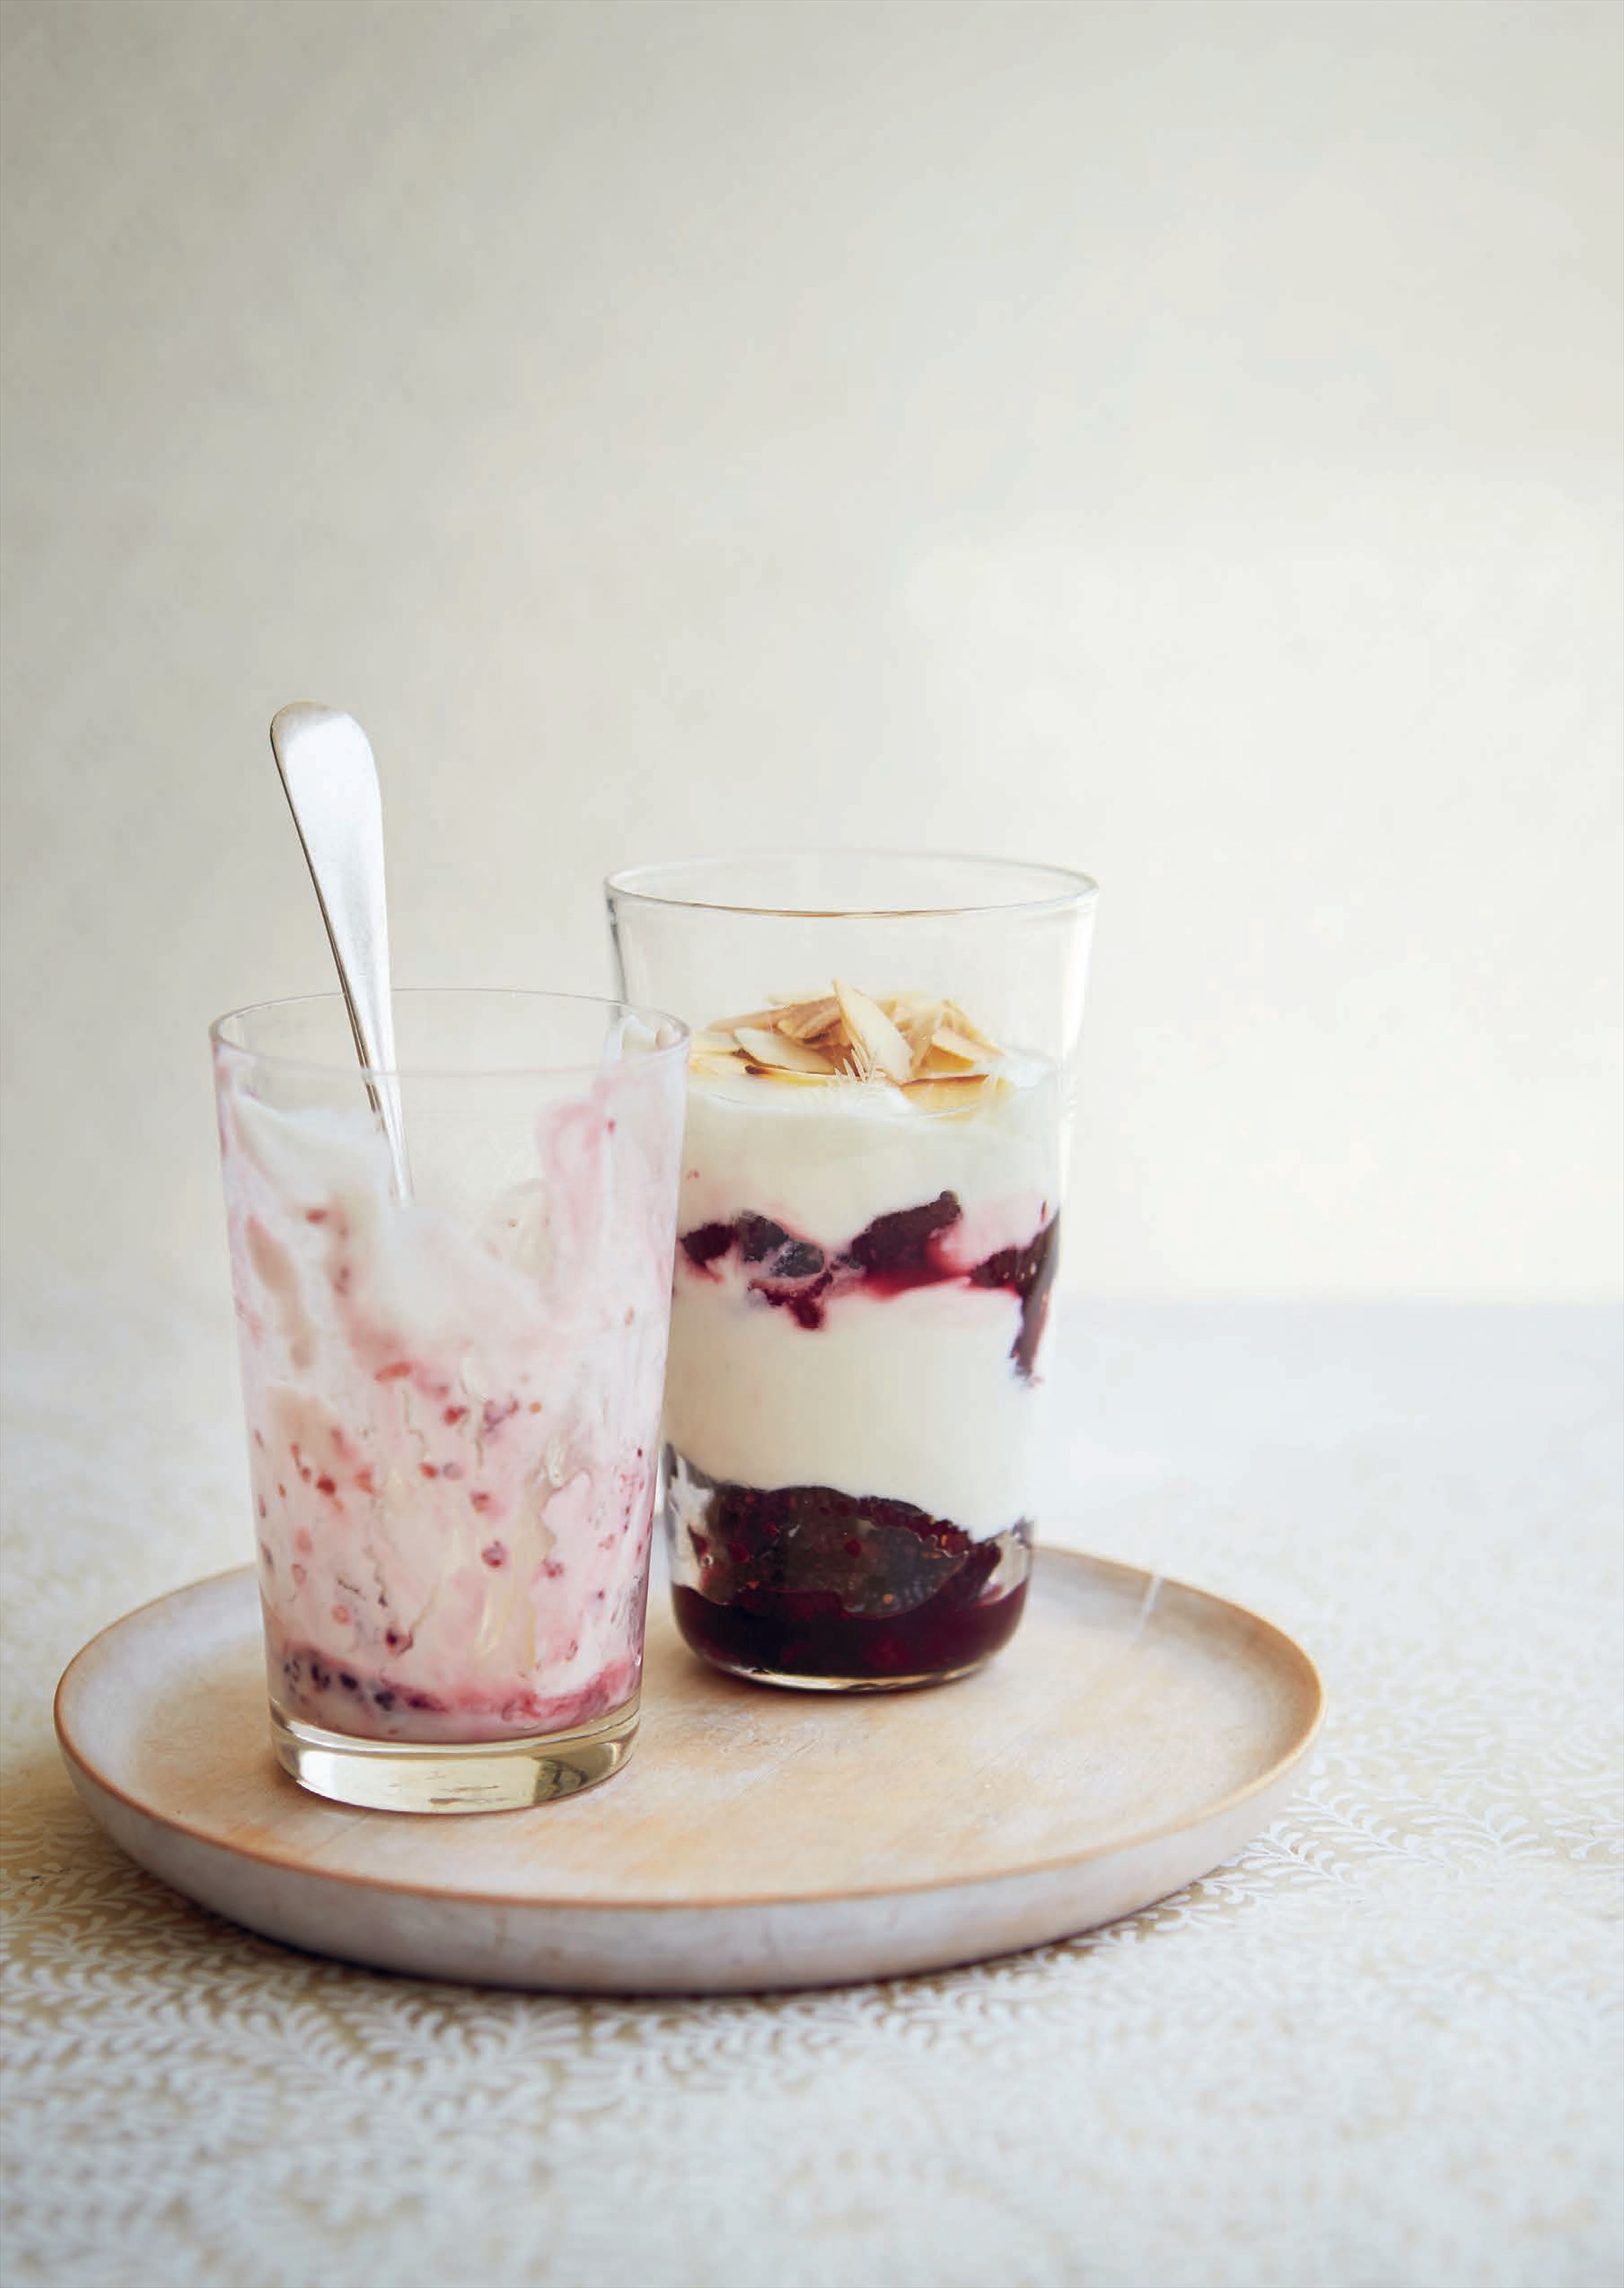 Mulberry and yogurt layers